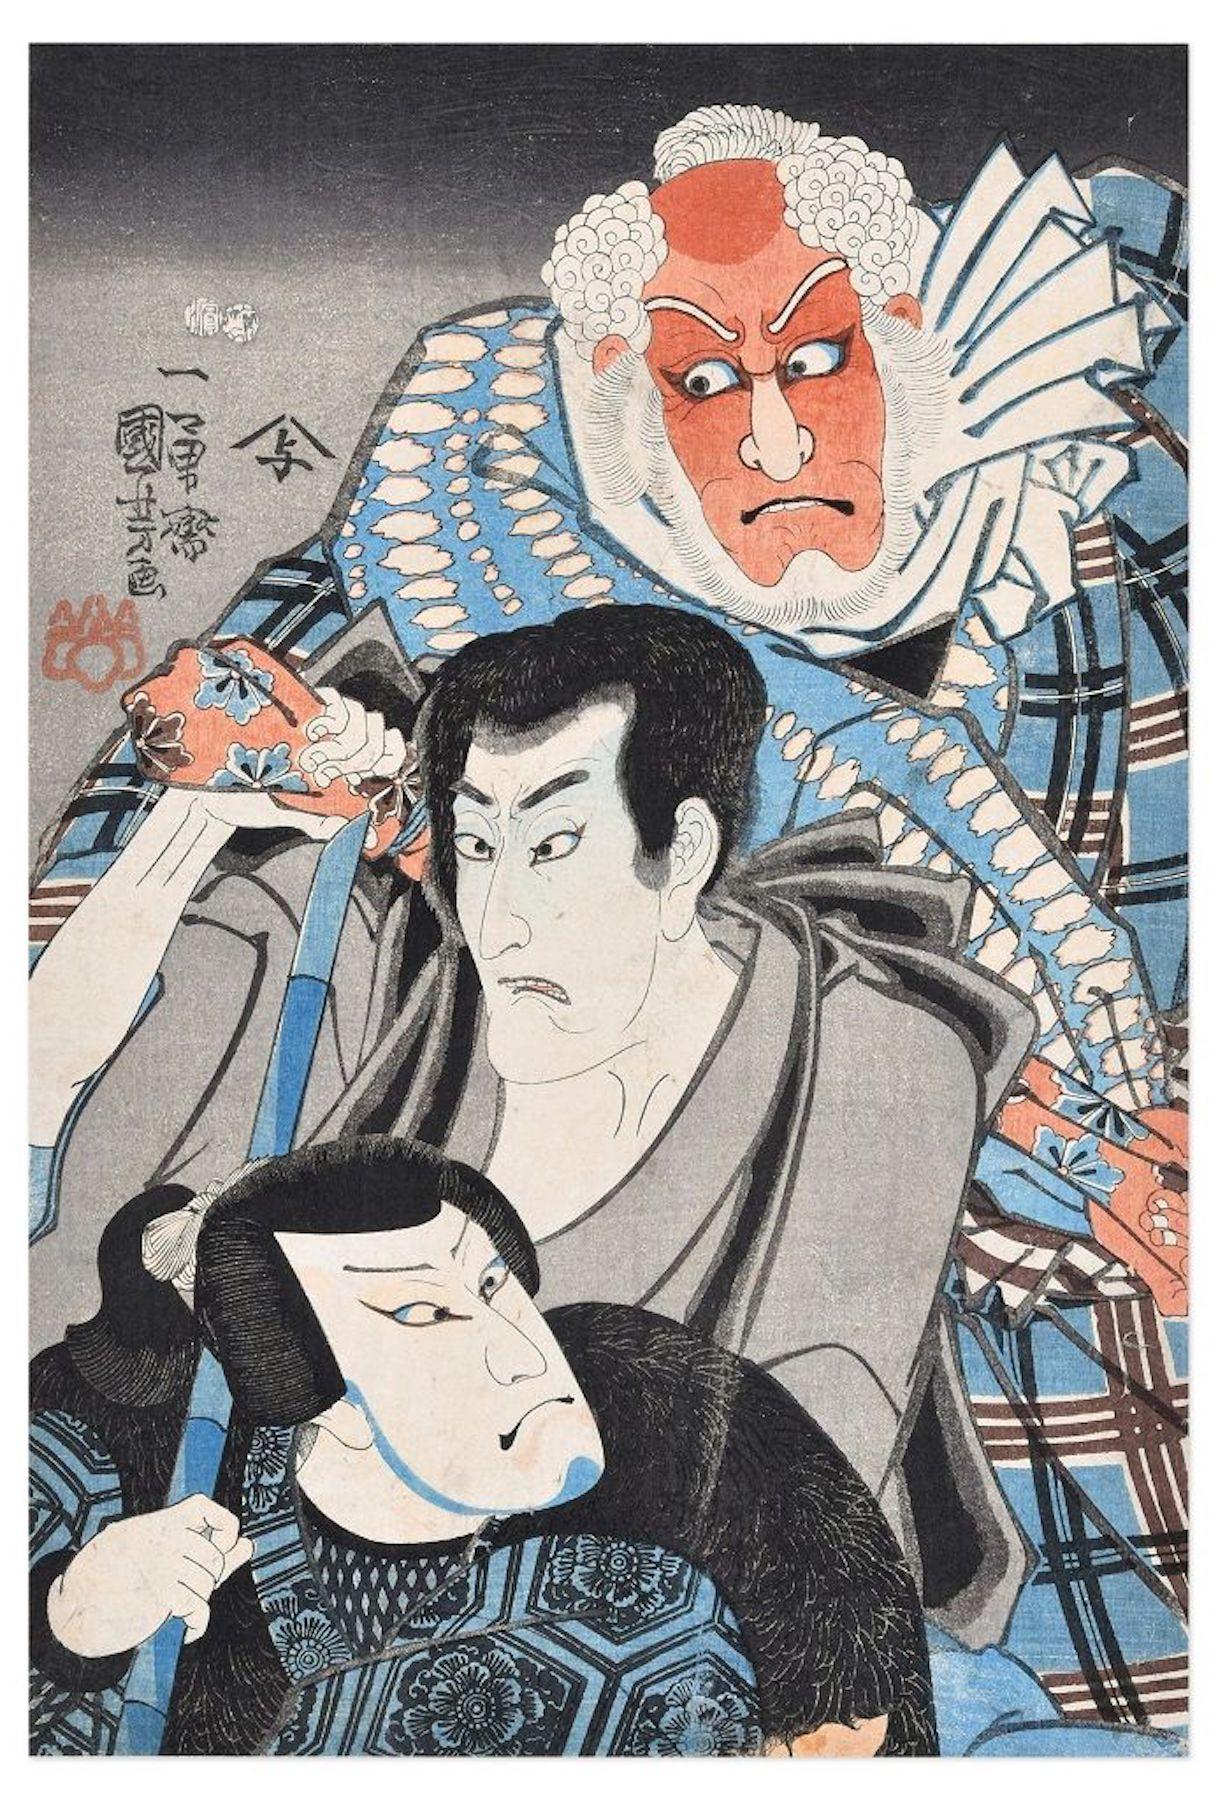 Utagawa Kuniyoshi Figurative Print - Kabuki Scene: a Revenge Story - Woodcut by U. Kuniyoshi - 1846/52